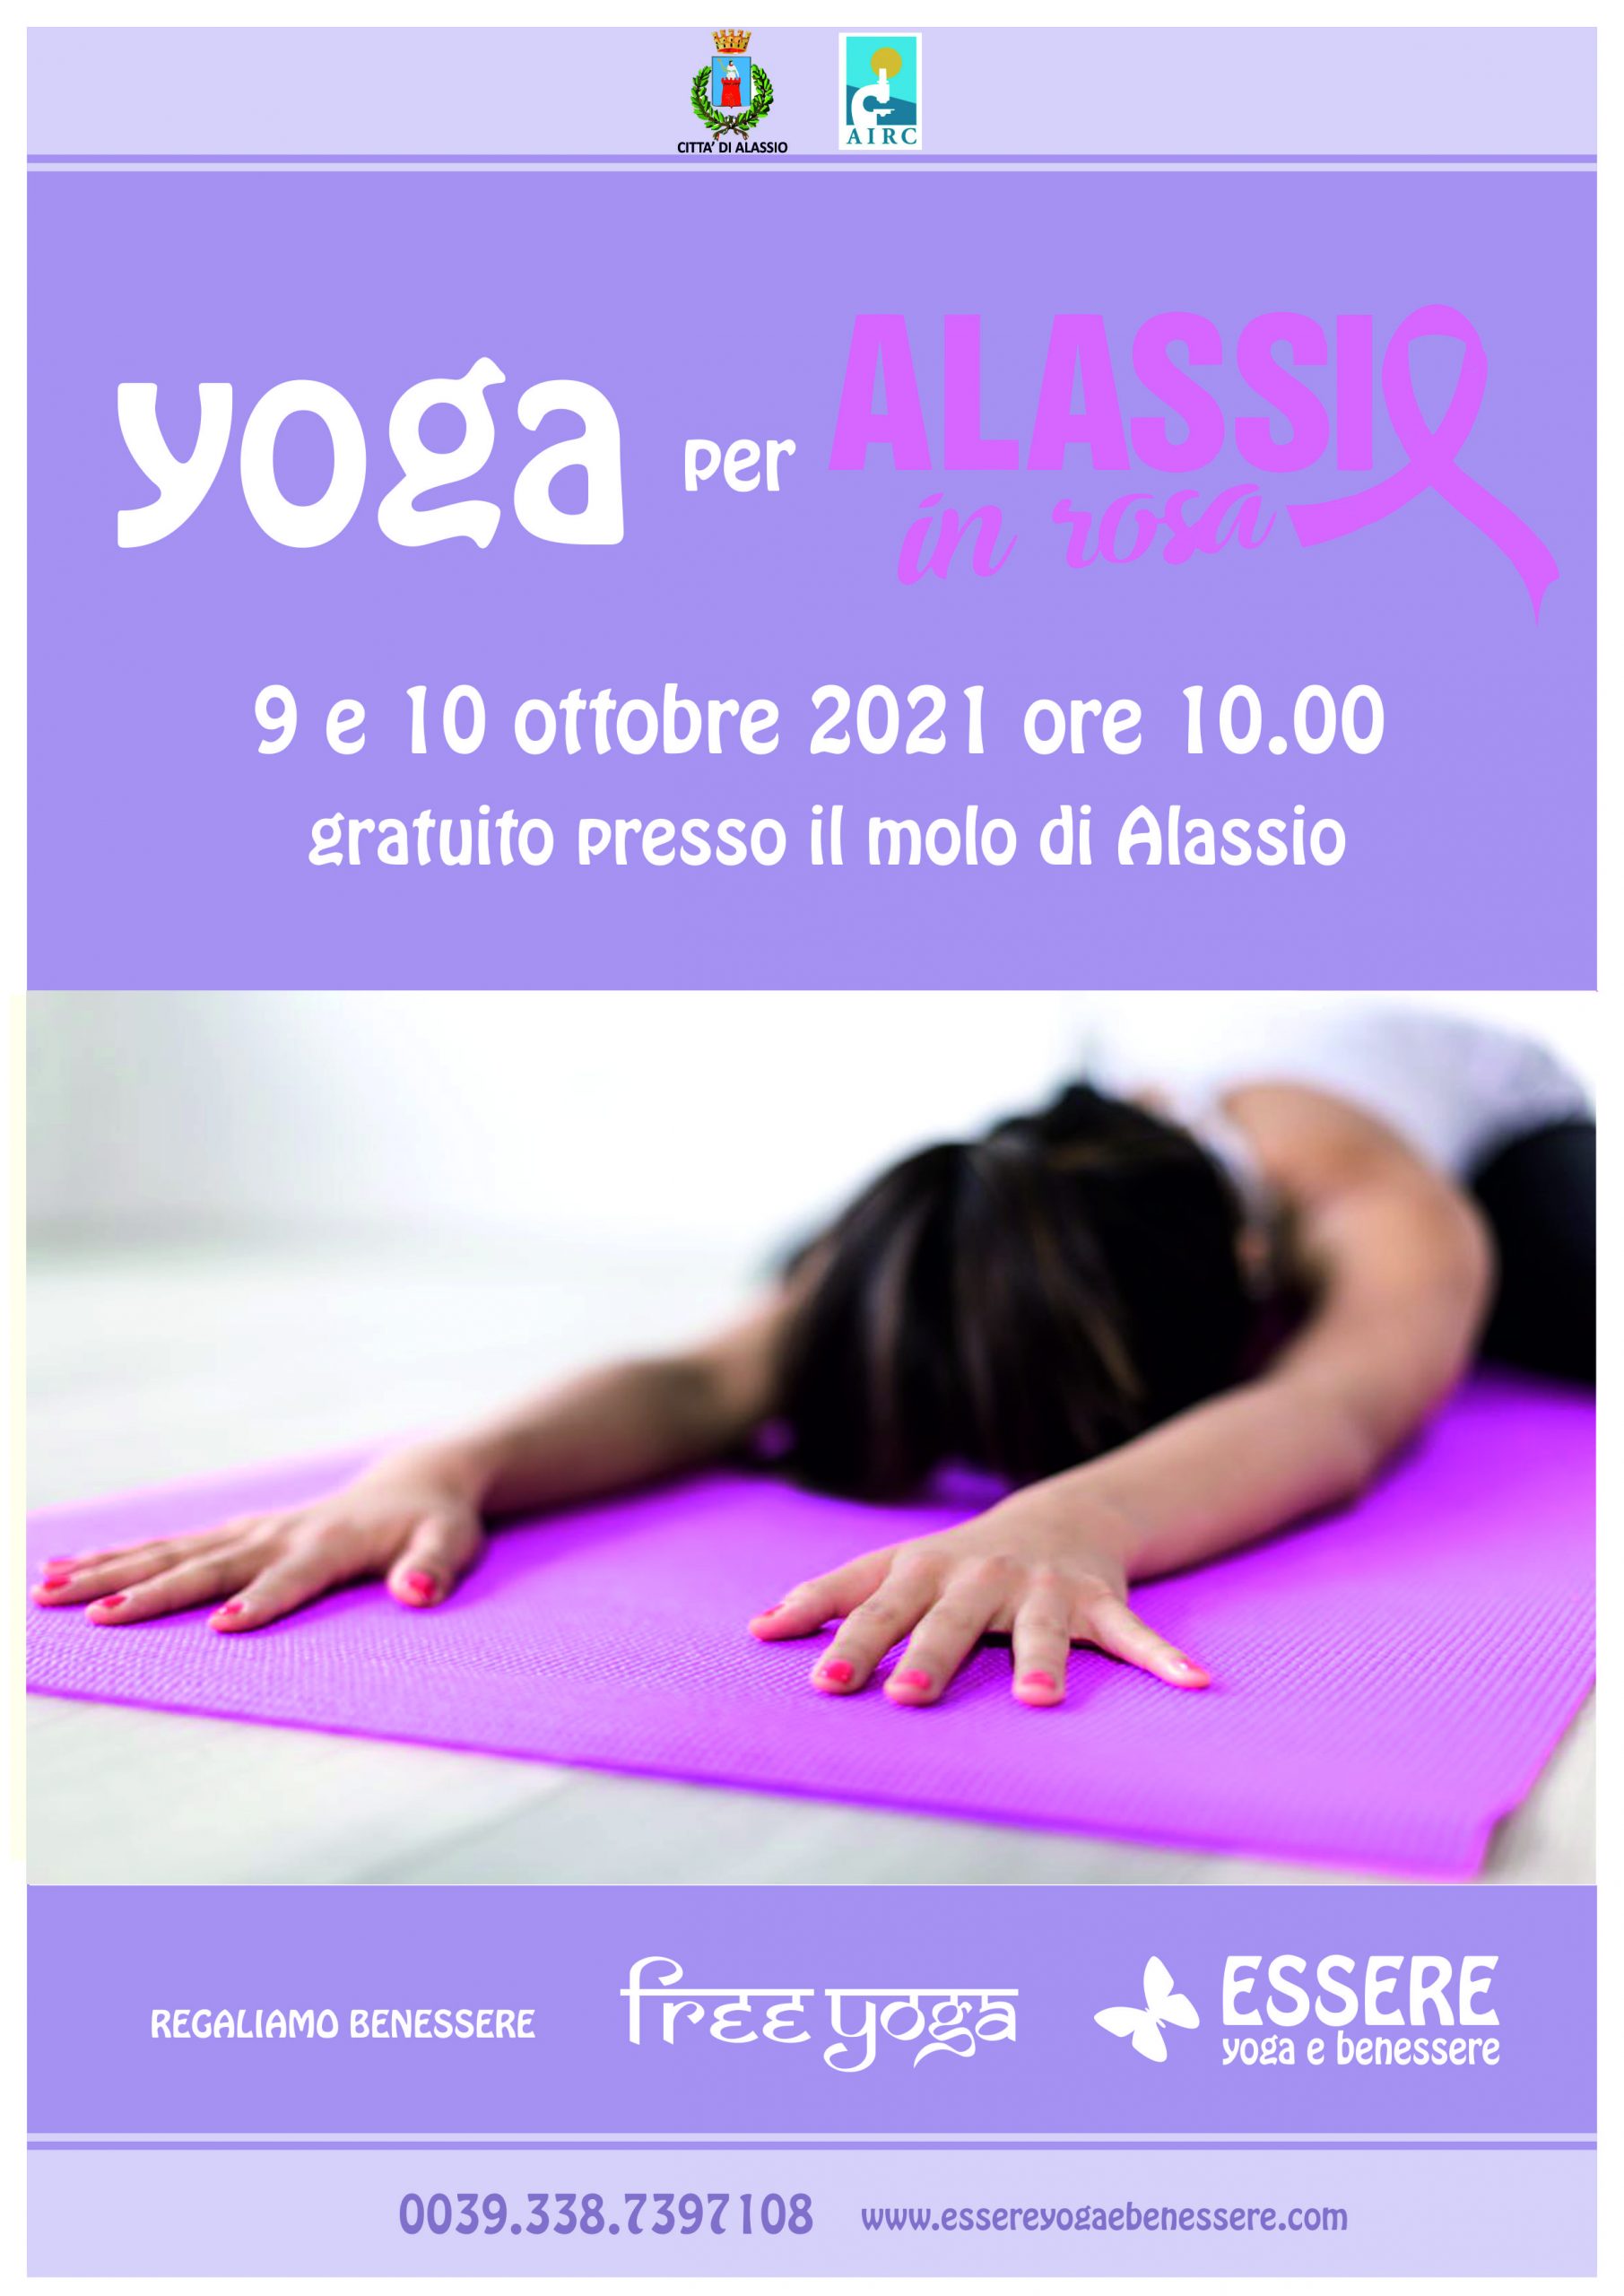 yoga-rosa-alassio-molo-gratuito-free-essere-benessere-lucia-ragazzi-esperienz-wellness-wellbeing-città-donne-prevenzione-airc-tumori-social